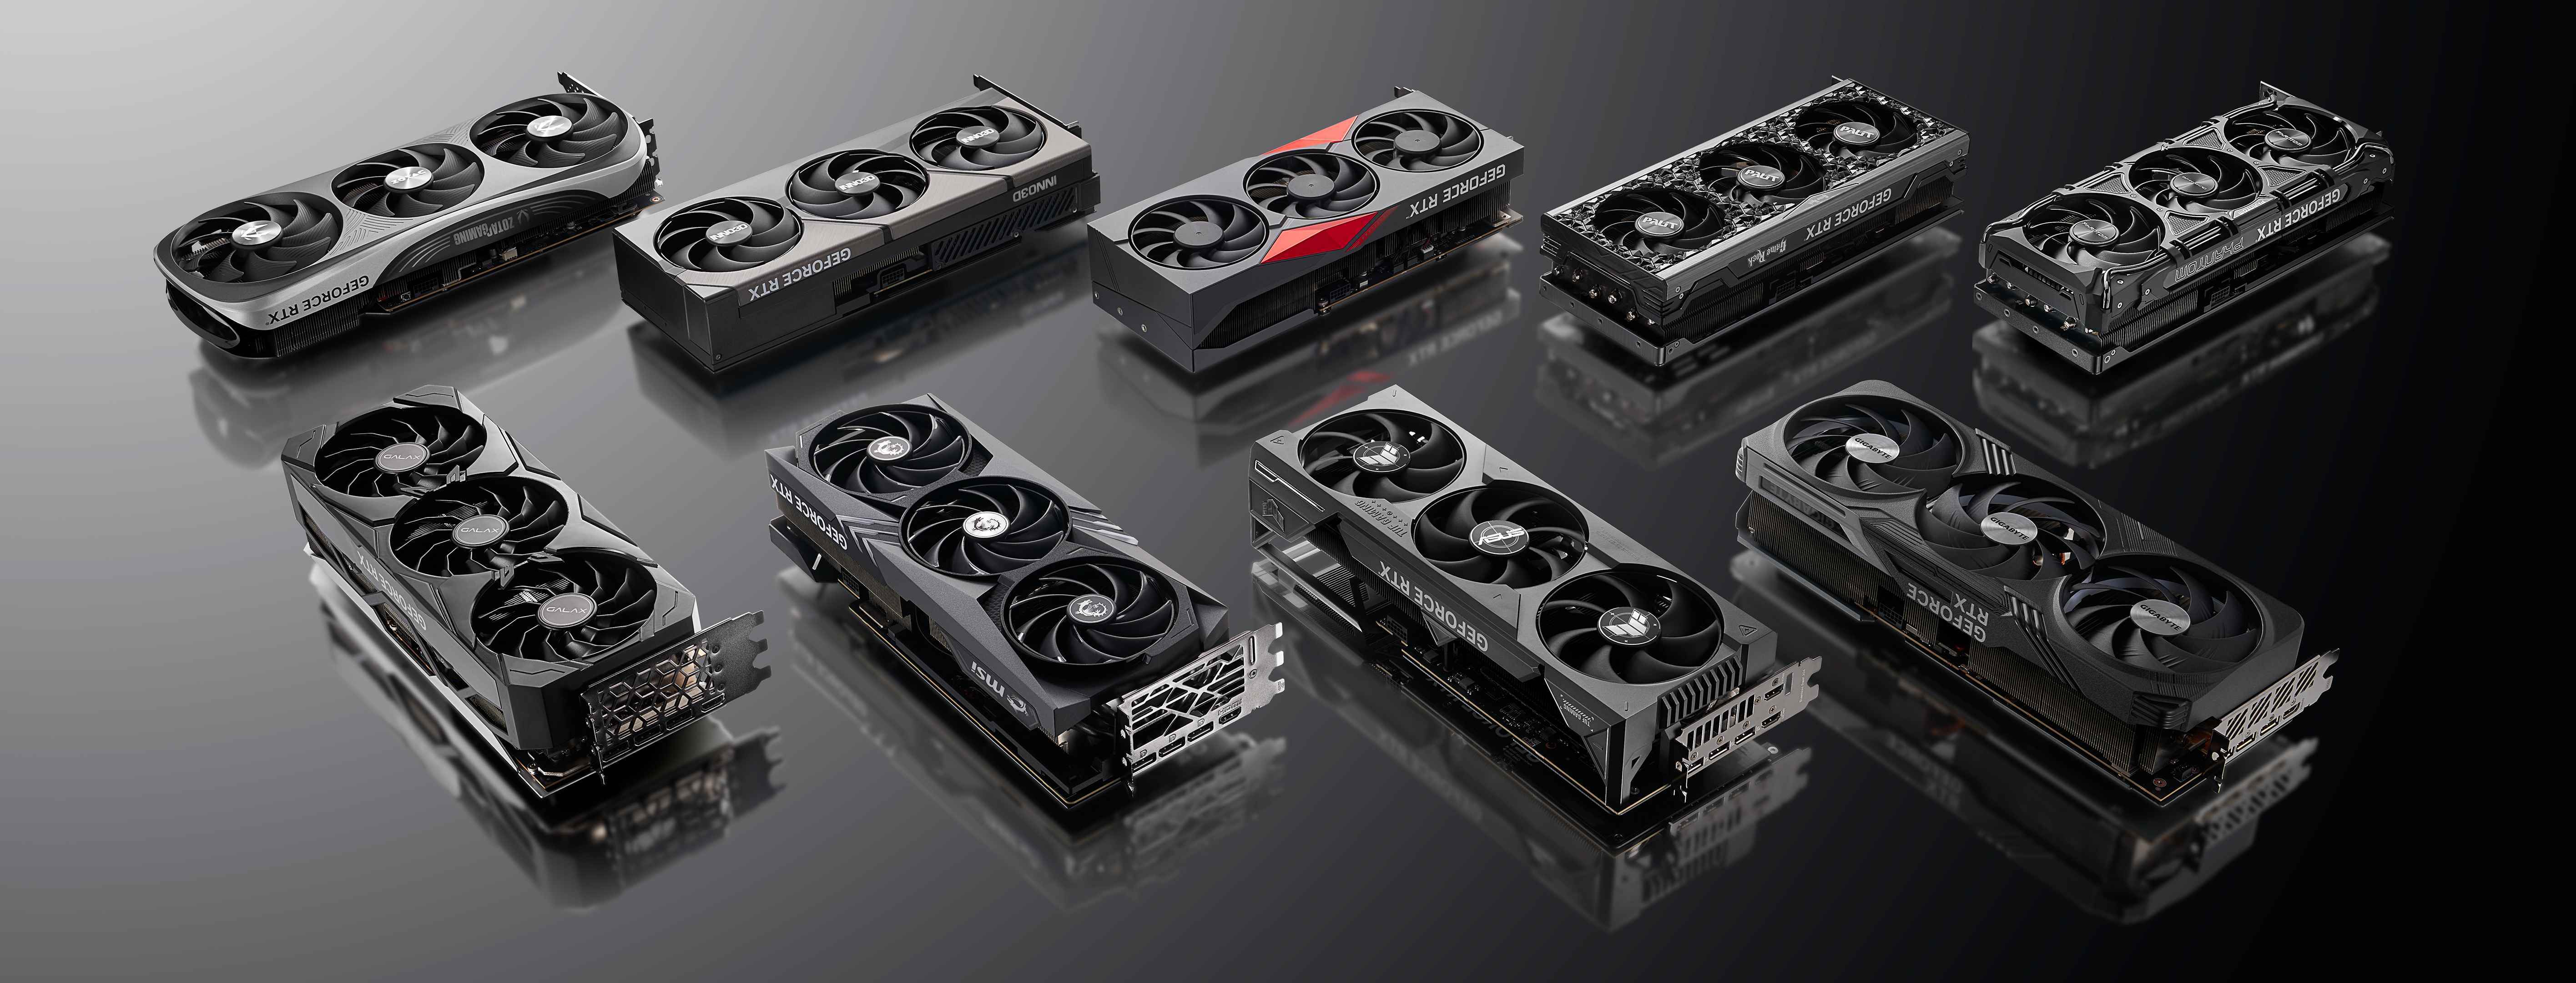 Üçüncü taraf satıcılardan Nvidia 40 serisi GPU'lar